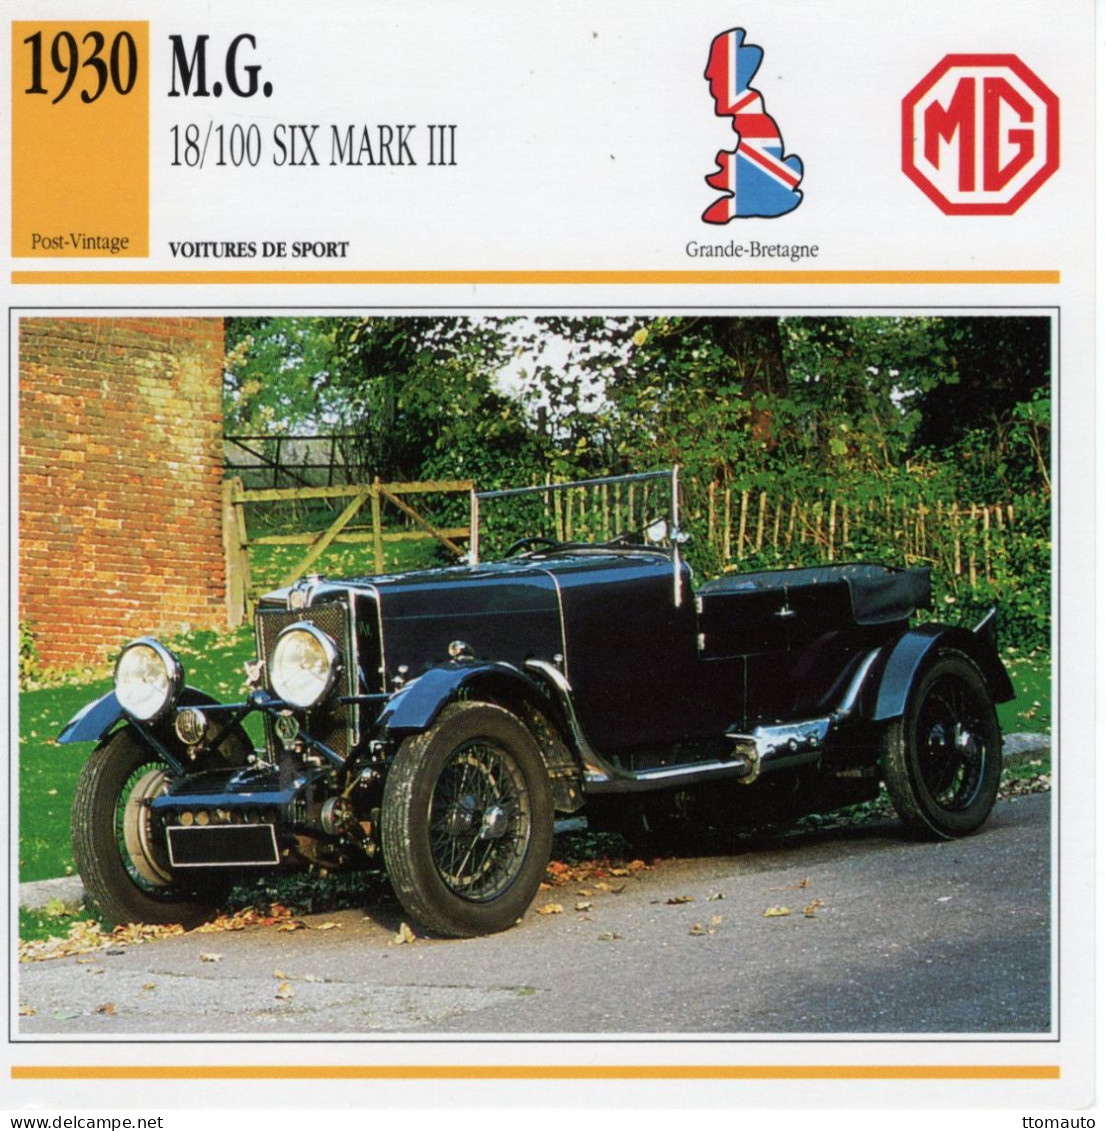 Fiche  -  Voiture De Sport  -  M.G. 18/100 Six Mk.III  (1930)   -  Carte De Collection - Cars